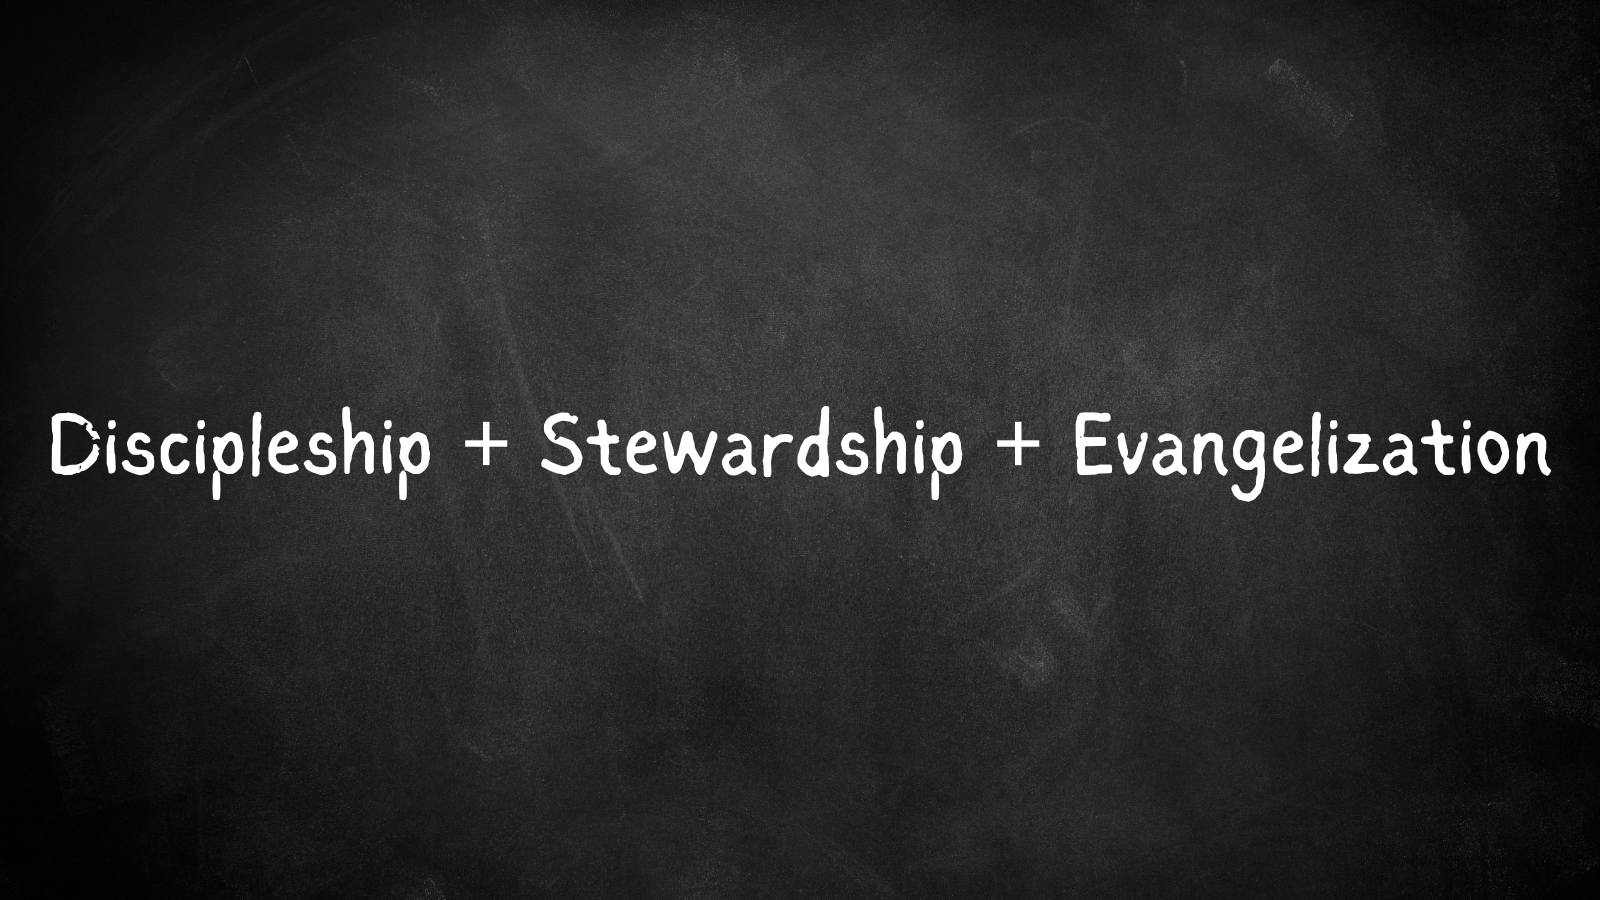 Discipleship, Stewardship & Evangelization